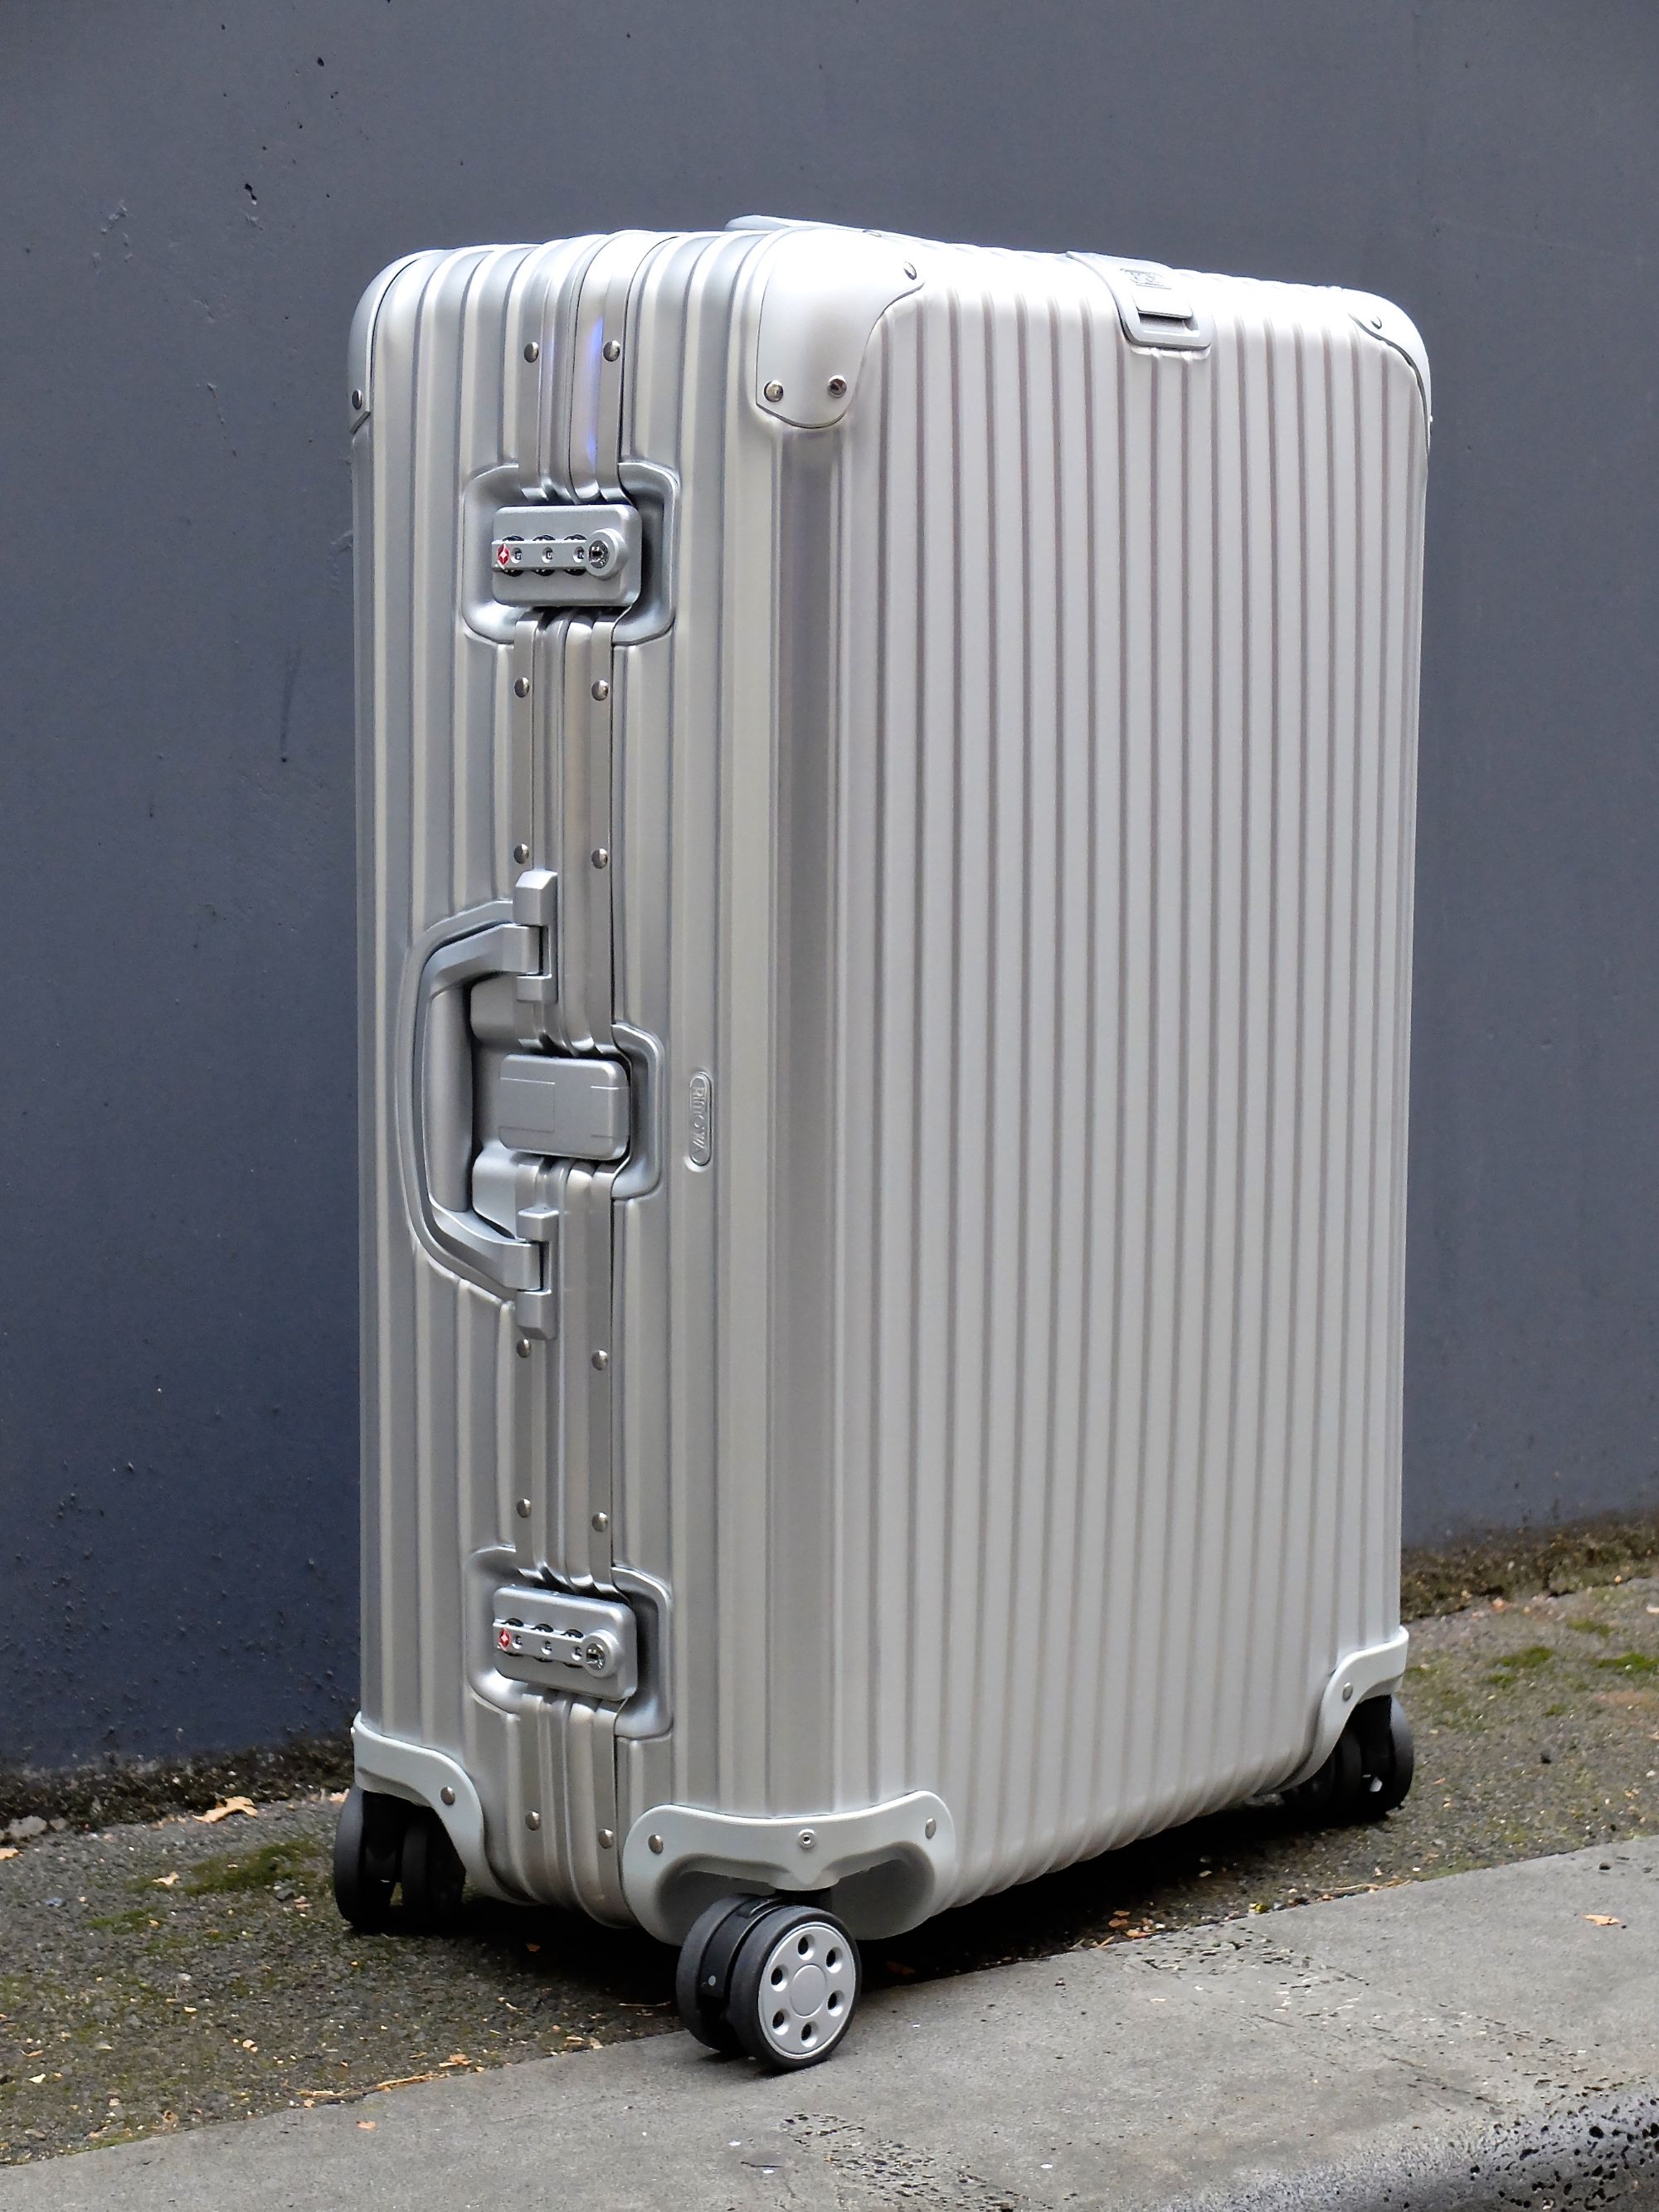 Rimowa luggage - thebetterlivingindex.com